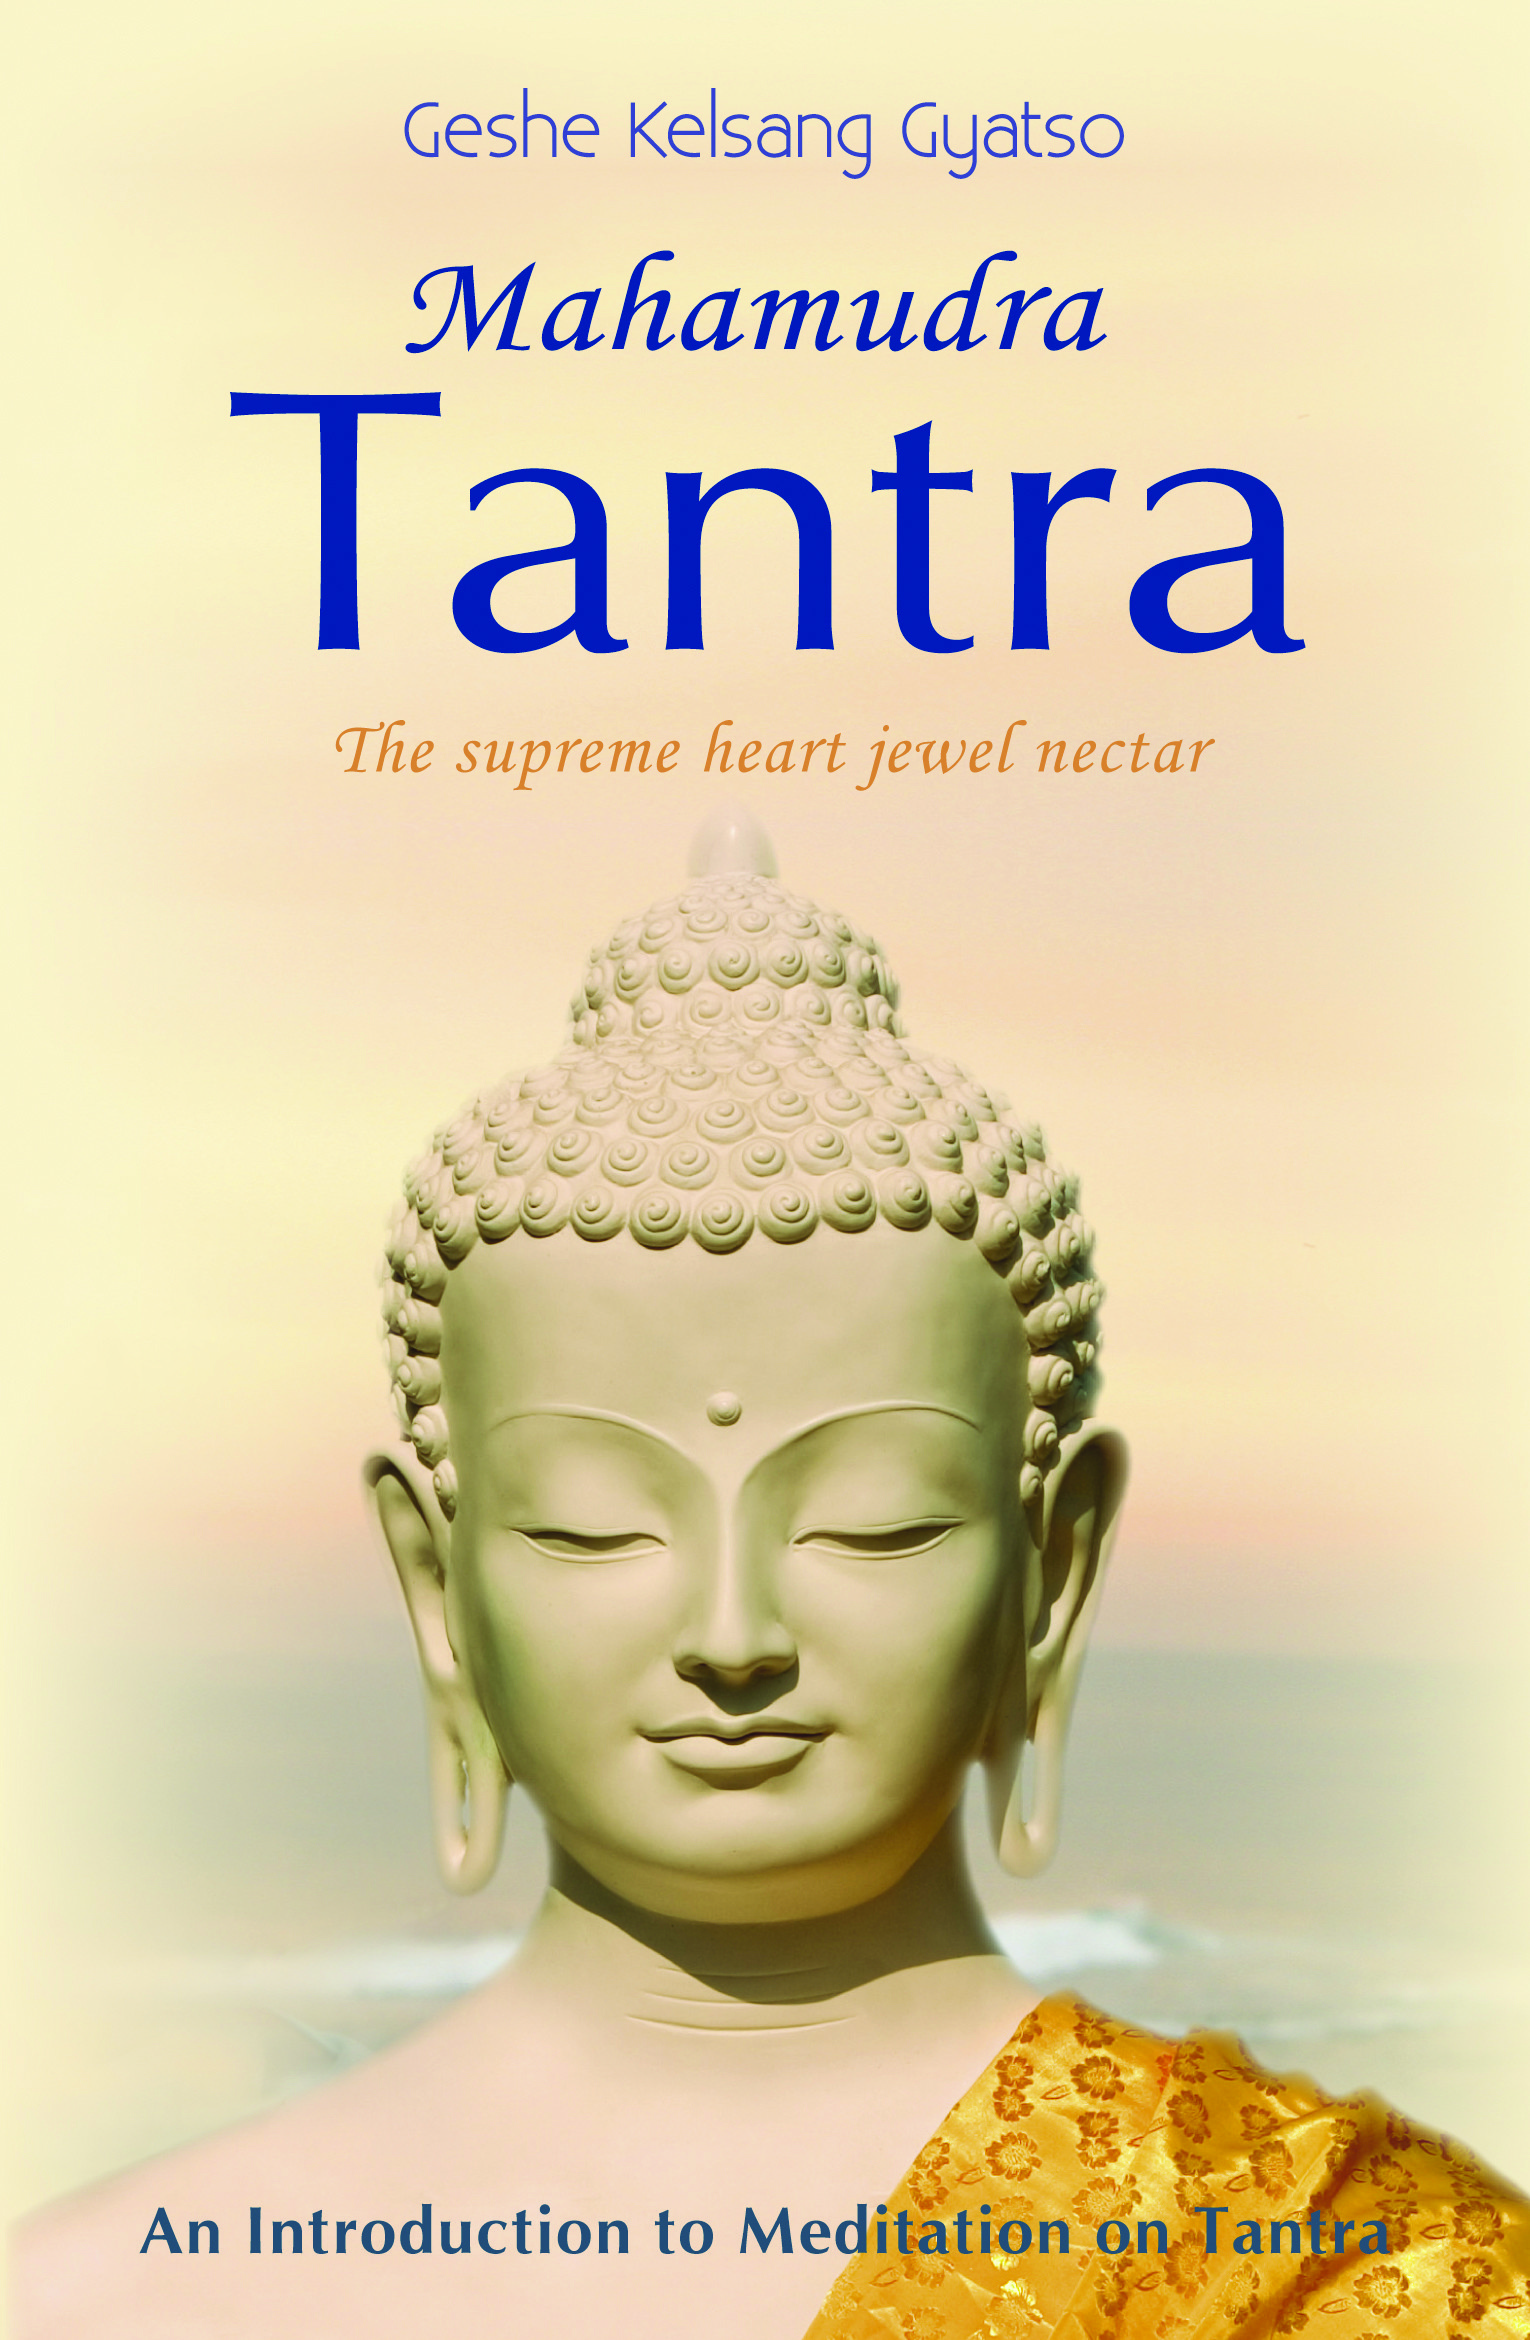 mahamudra-tantra-geshe-kelsang-gyatso-book